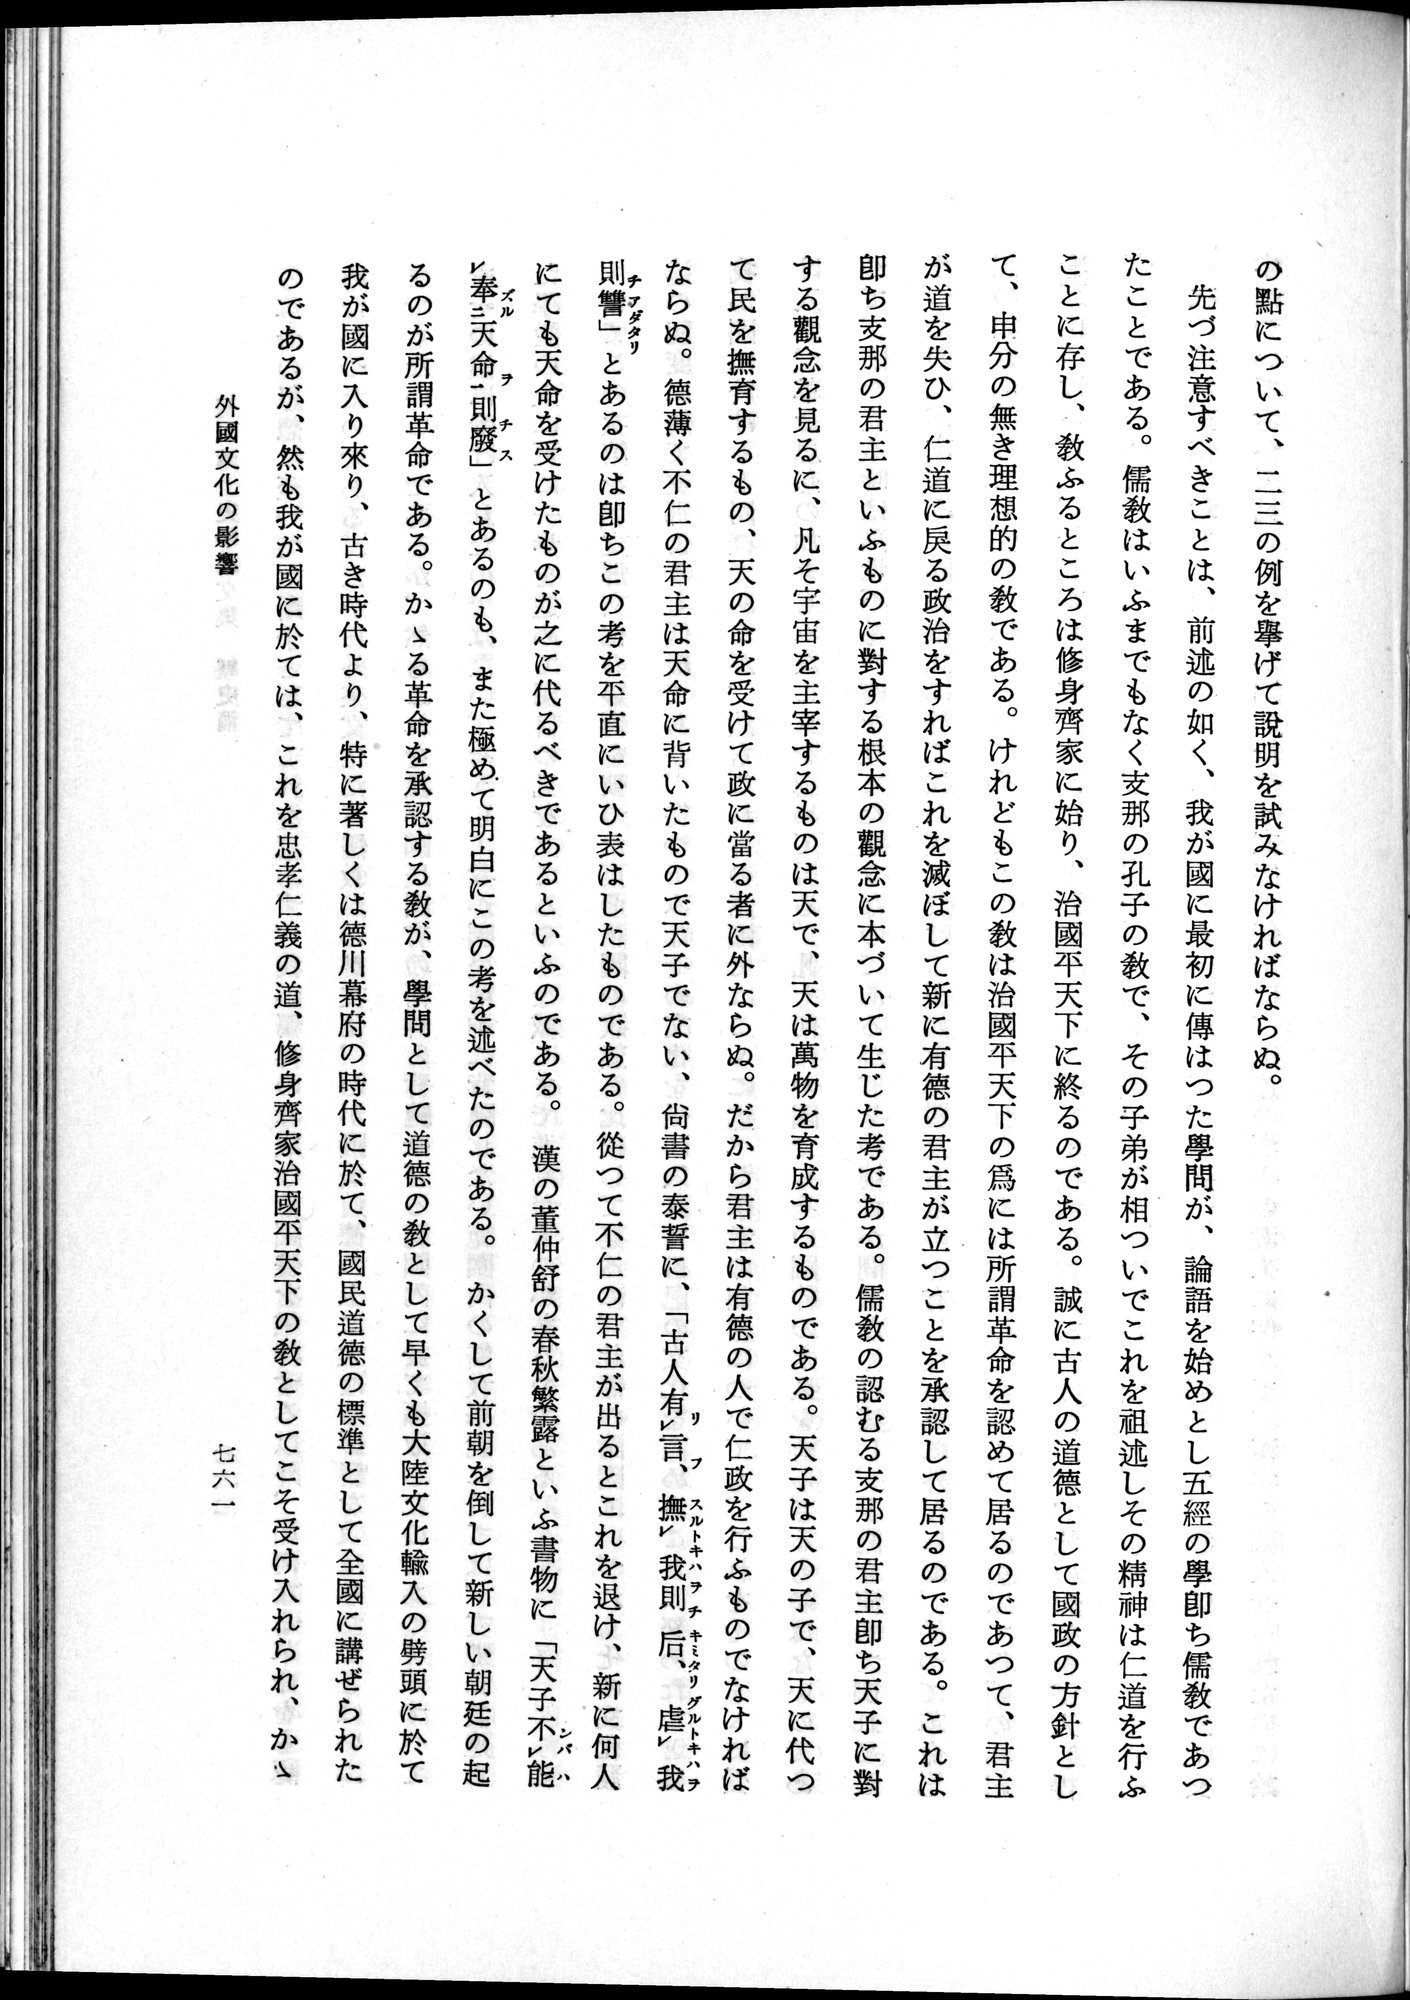 羽田博士史学論文集 : vol.1 / Page 799 (Grayscale High Resolution Image)